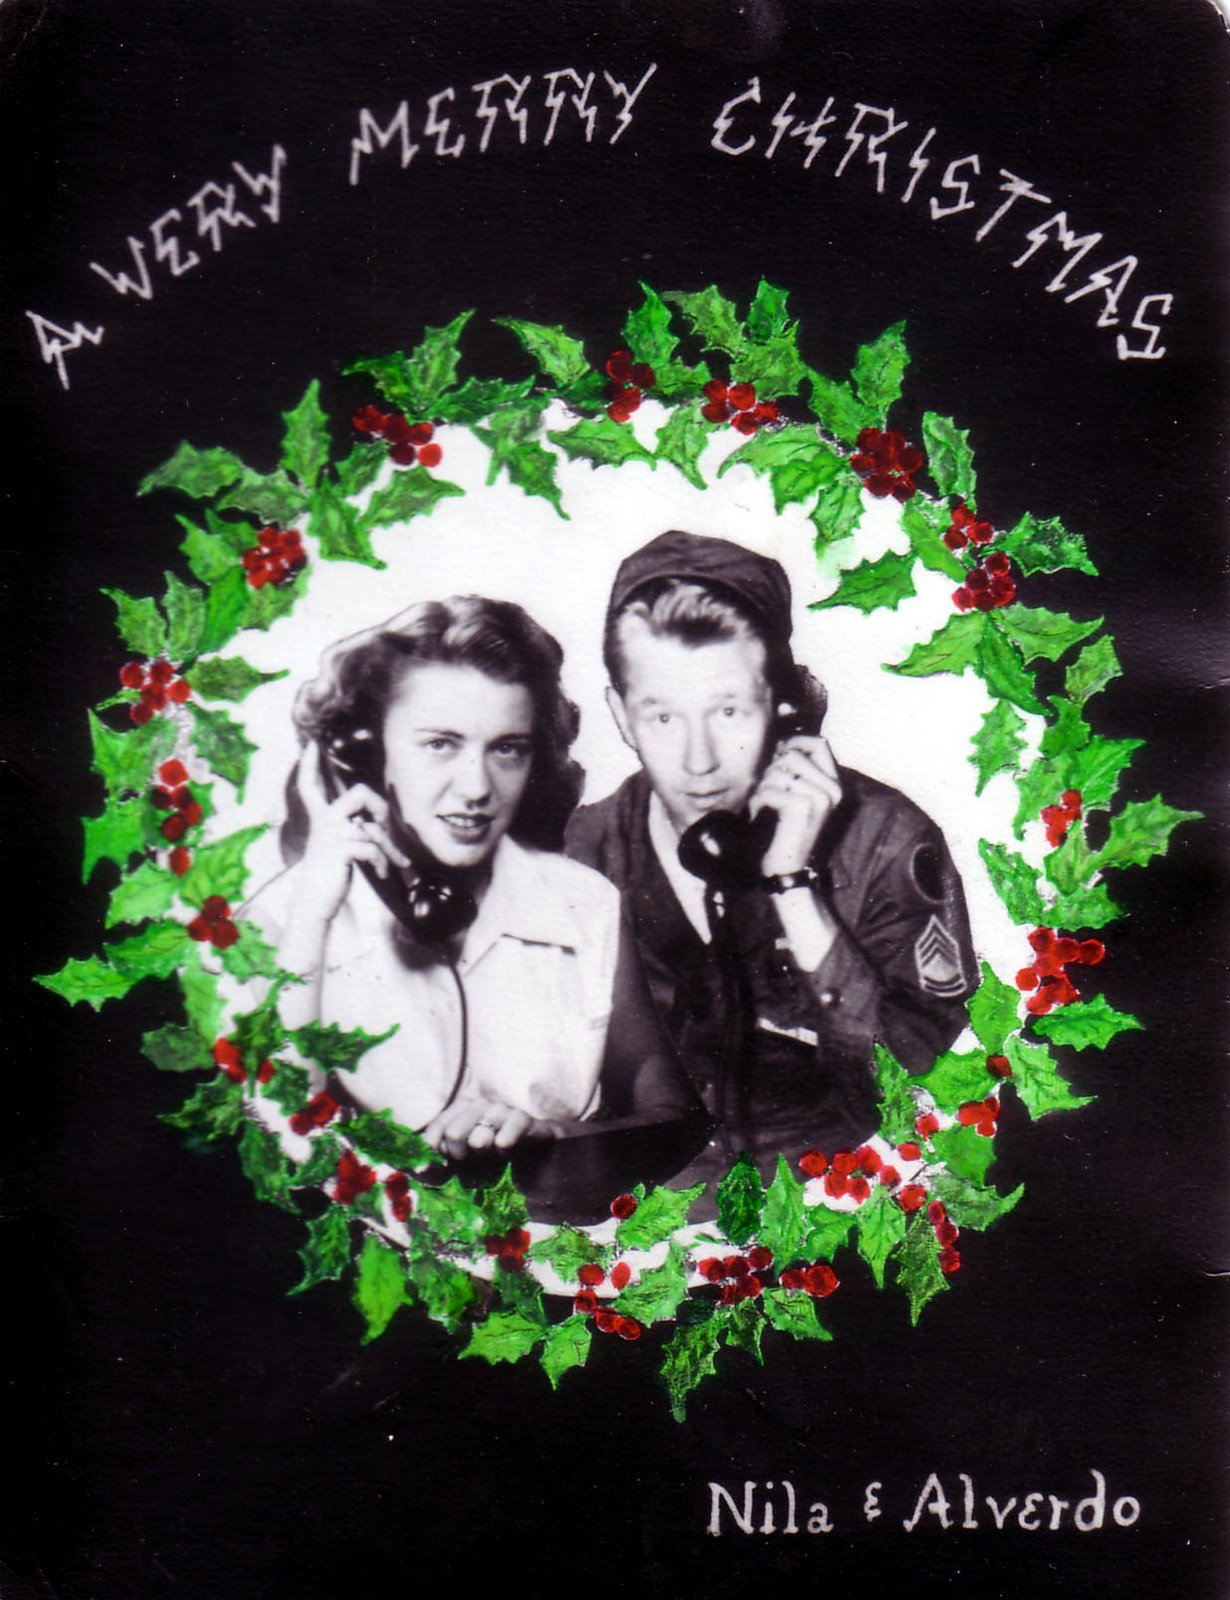 Al and Nila Christmas 1952